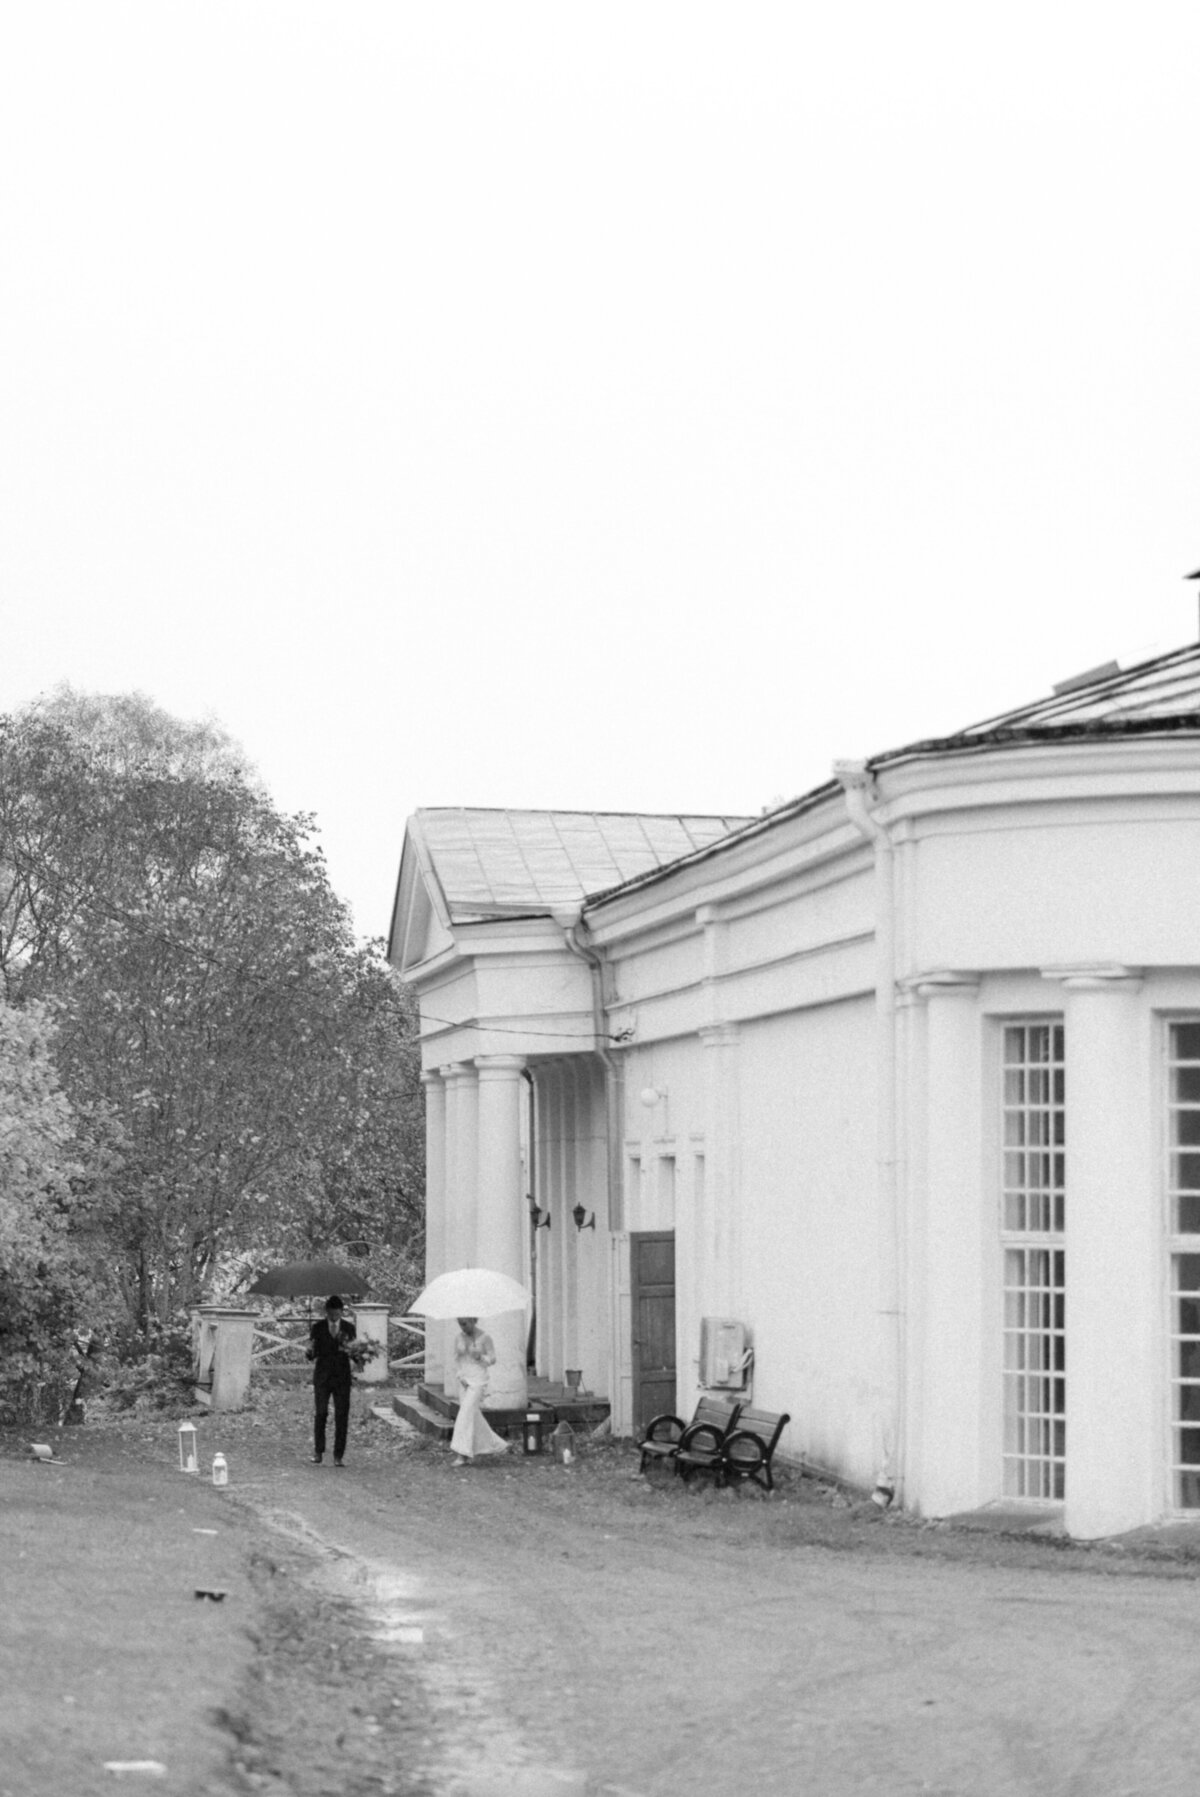 Hääpari astuu ulos orangeriesta sateenvarjojen kanssa Oitbackan kartanolla hääkuvaaja Hannika Gabrielssonin ottamassa syksyisessä dokumentaarisessa hääkuvassa.